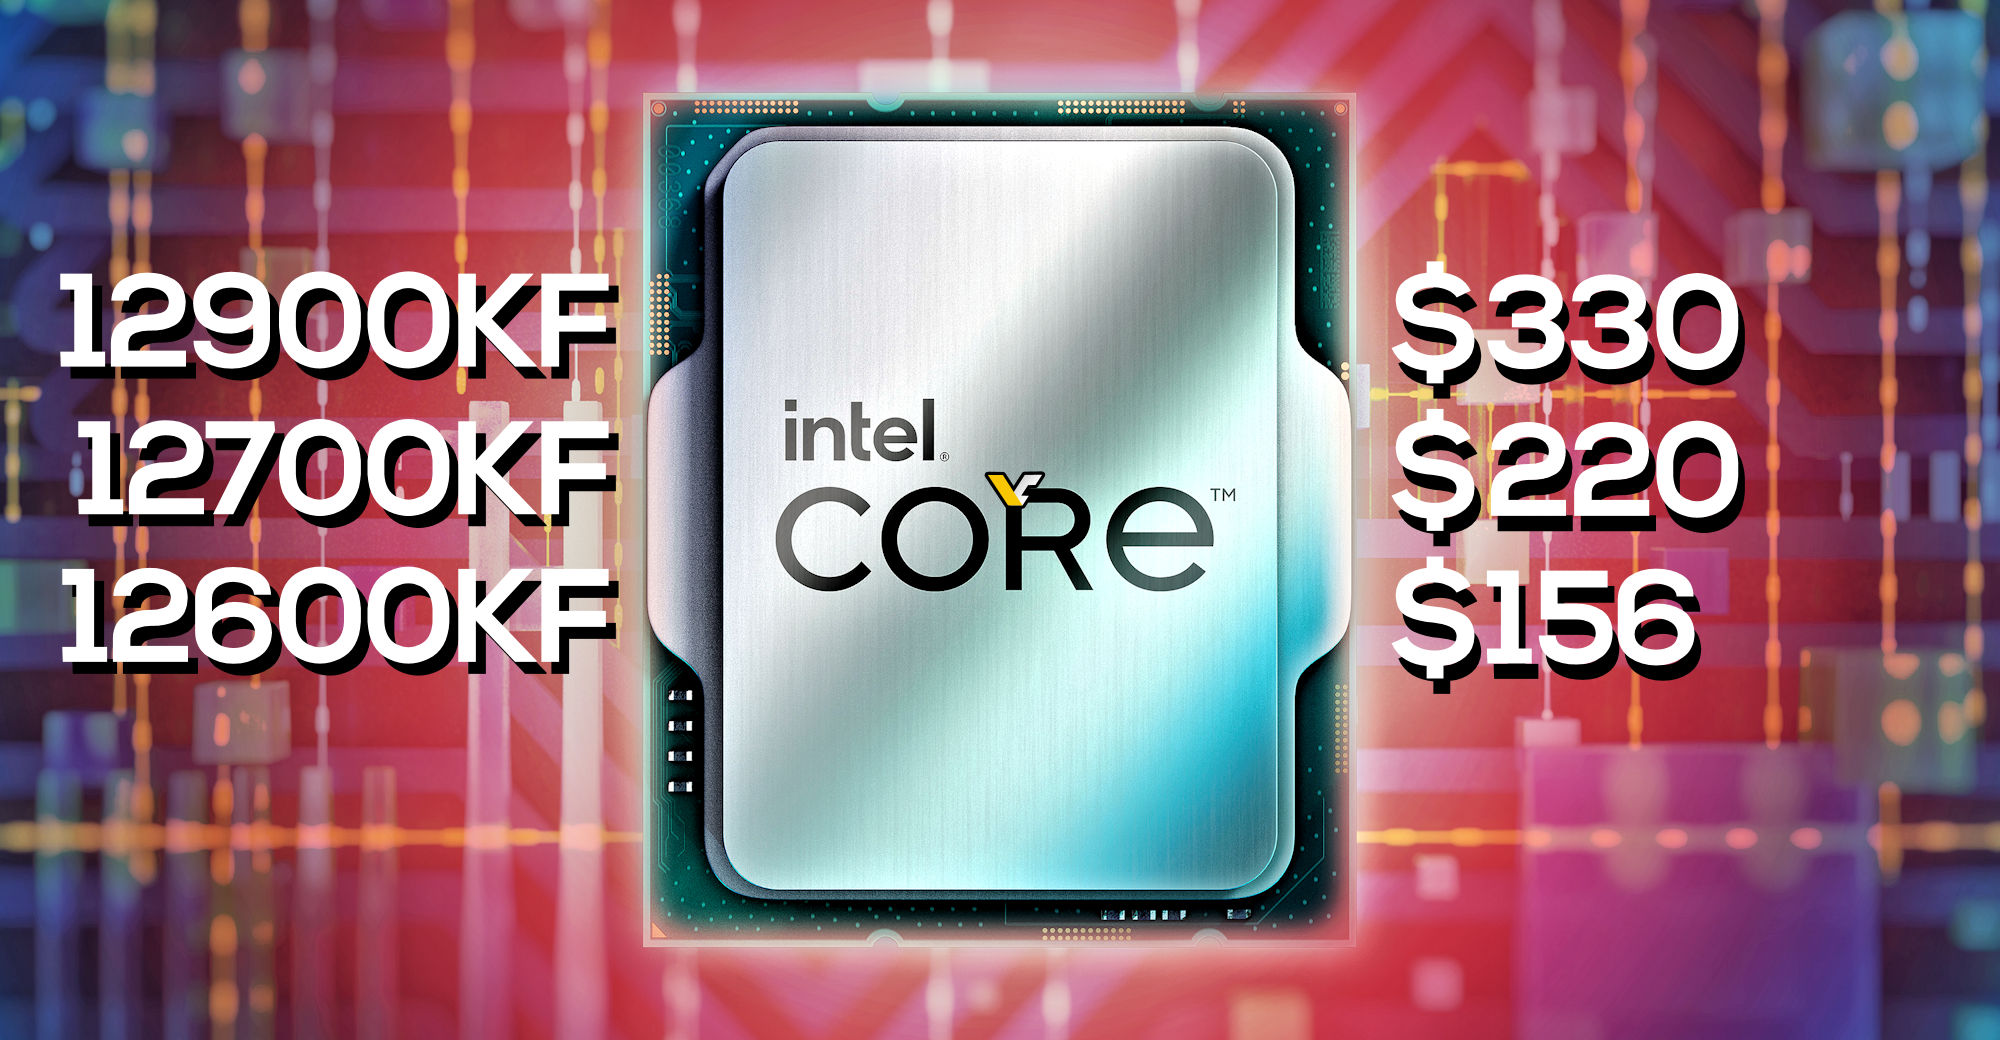 حصلت وحدات المعالجة المركزية Intel Alder Lake على تخفيض في الأسعار: Core i9-12900KF بسعر 330 دولارًا ، و i7-12700KF بسعر 220 دولارًا و i5-12600KF ينخفض ​​إلى 156 دولارًا